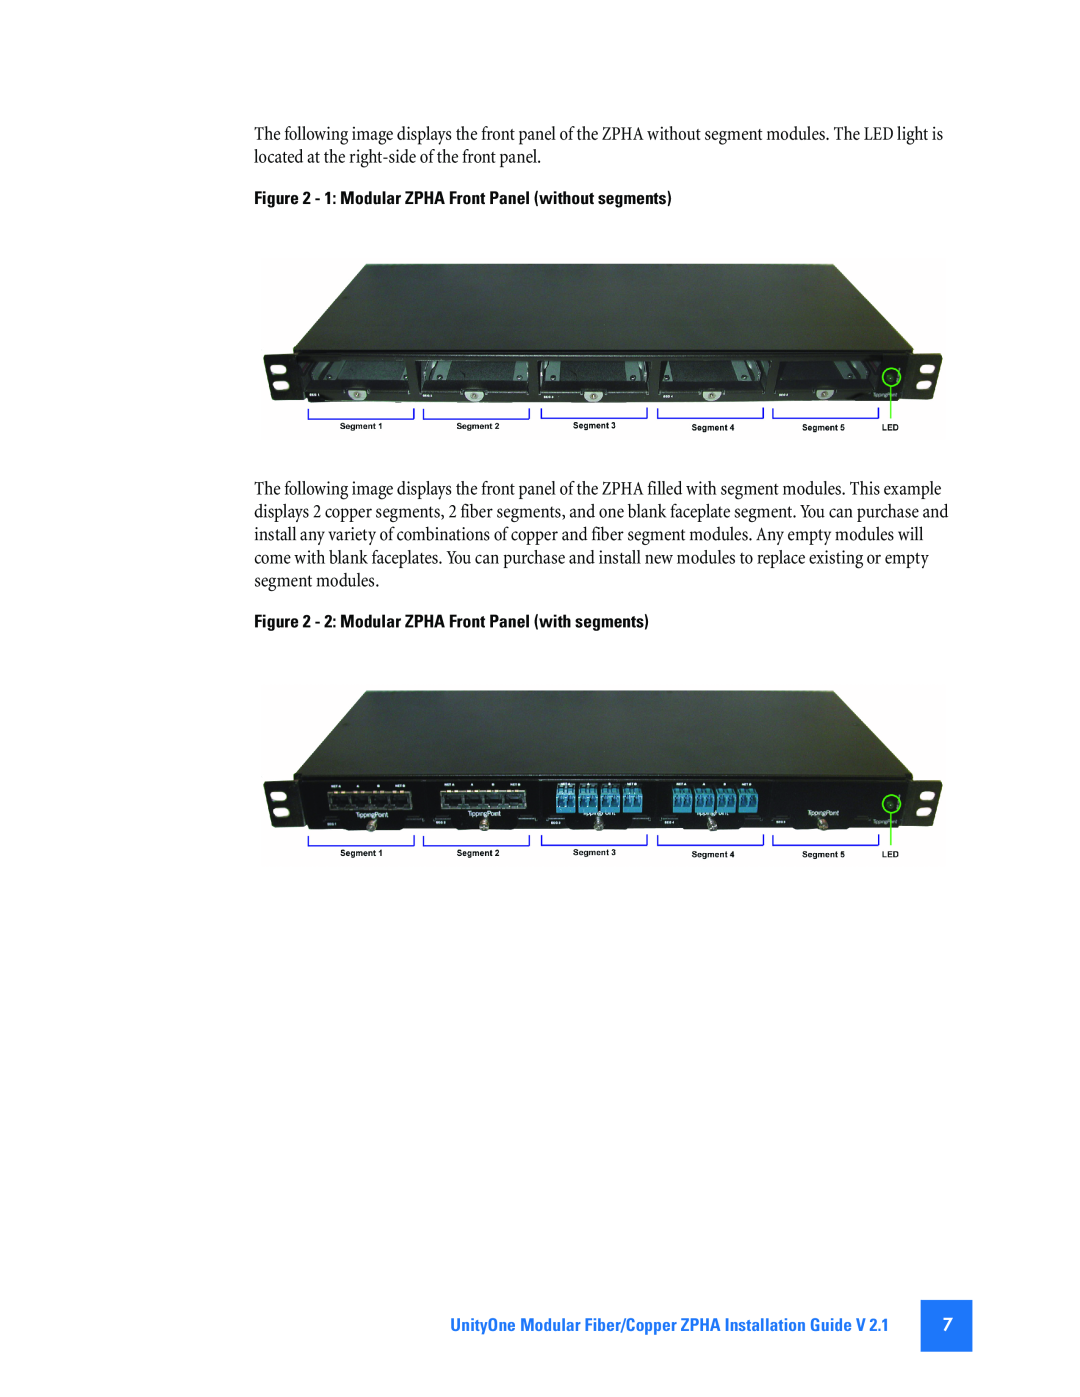 3Com TECHD-0000000050 manual 1 Modular ZPHA Front Panel without segments, 2 Modular ZPHA Front Panel with segments 